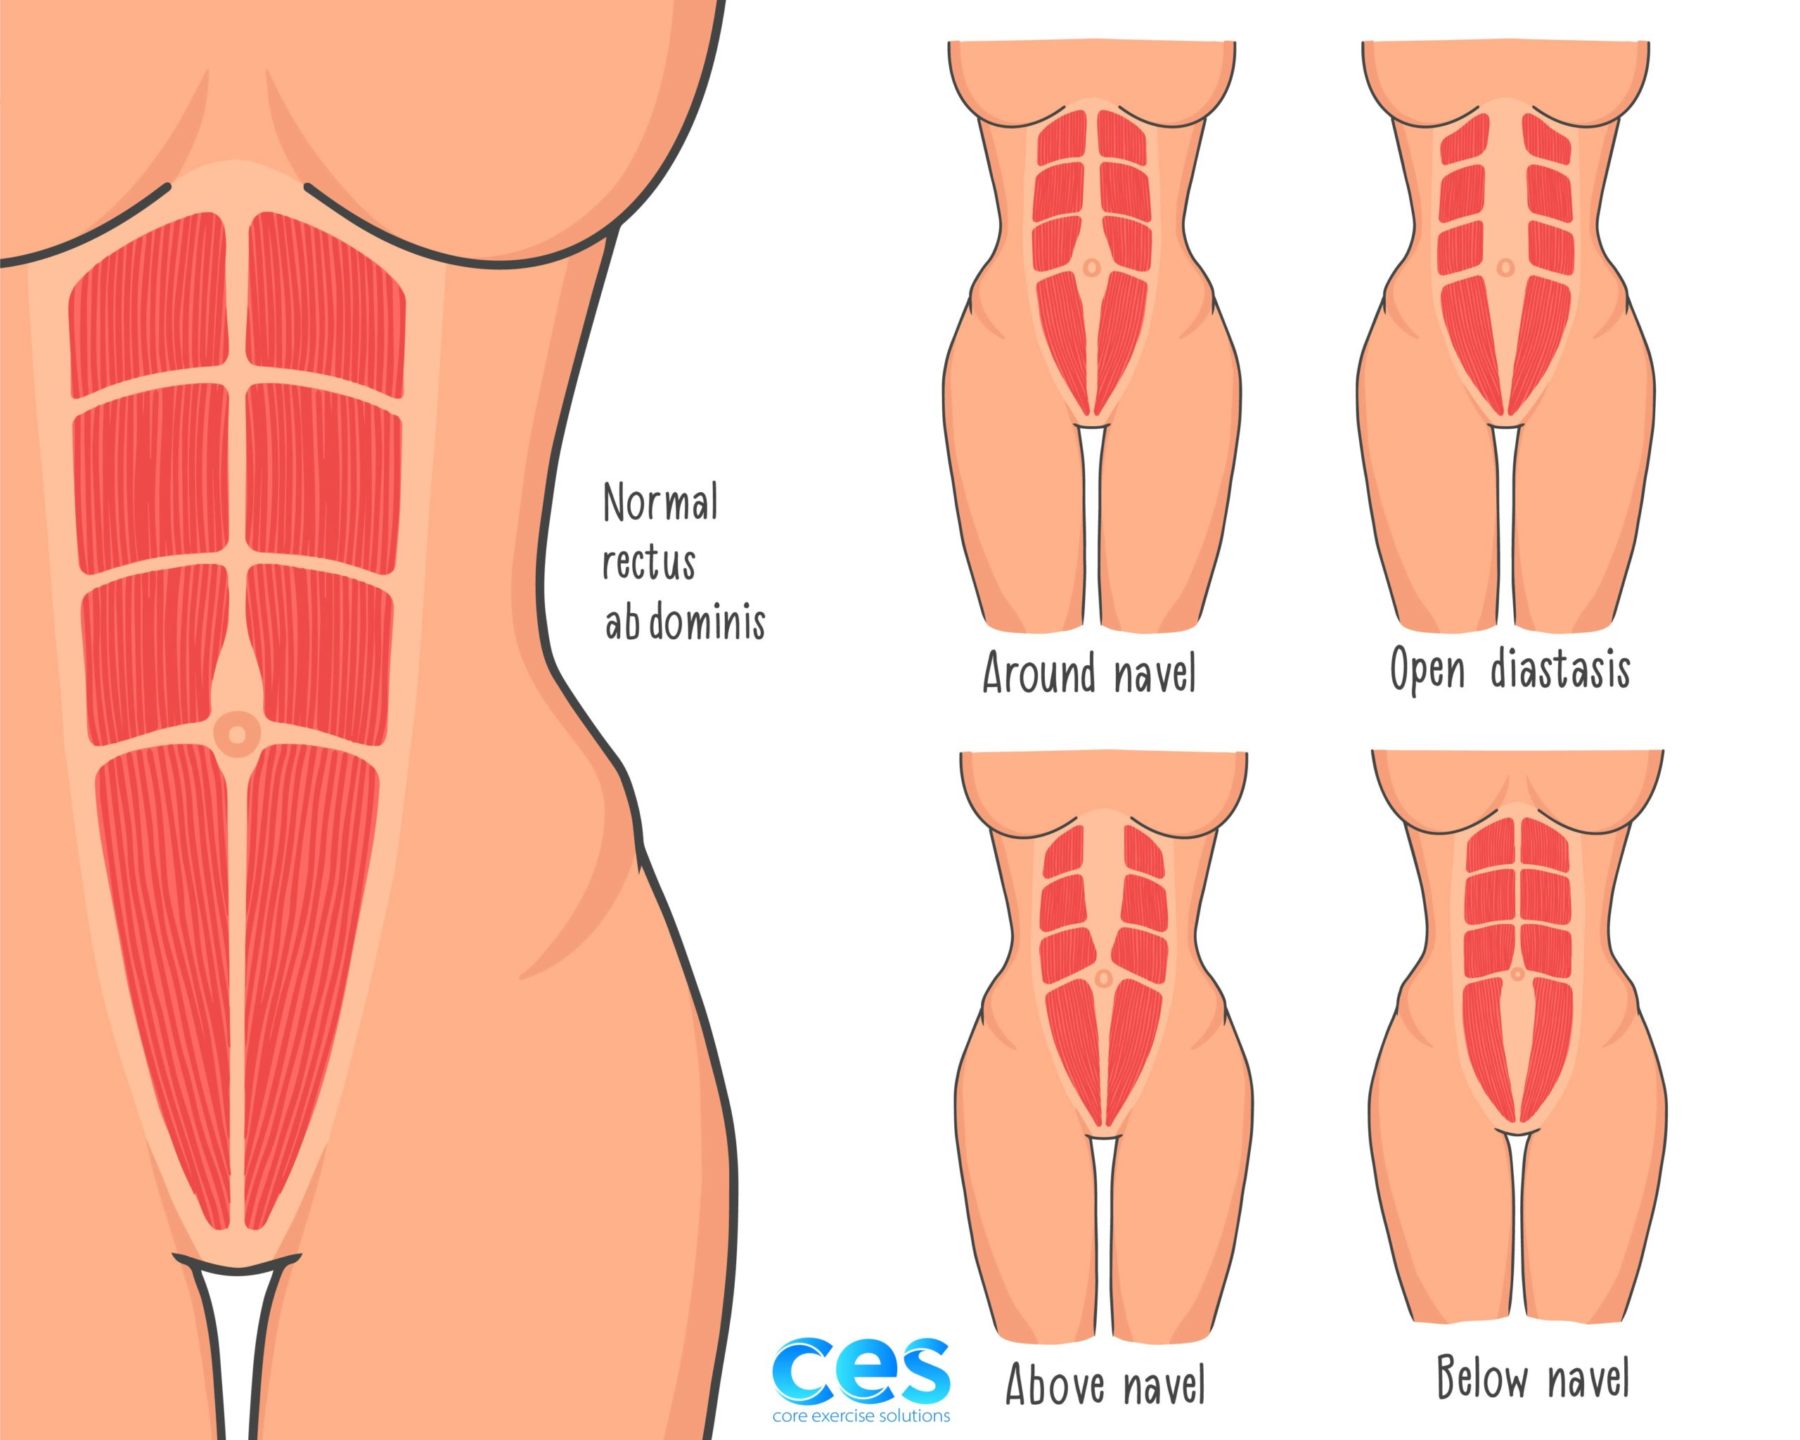 Body FX - Client has Diastasis Recti, also known as abdominal